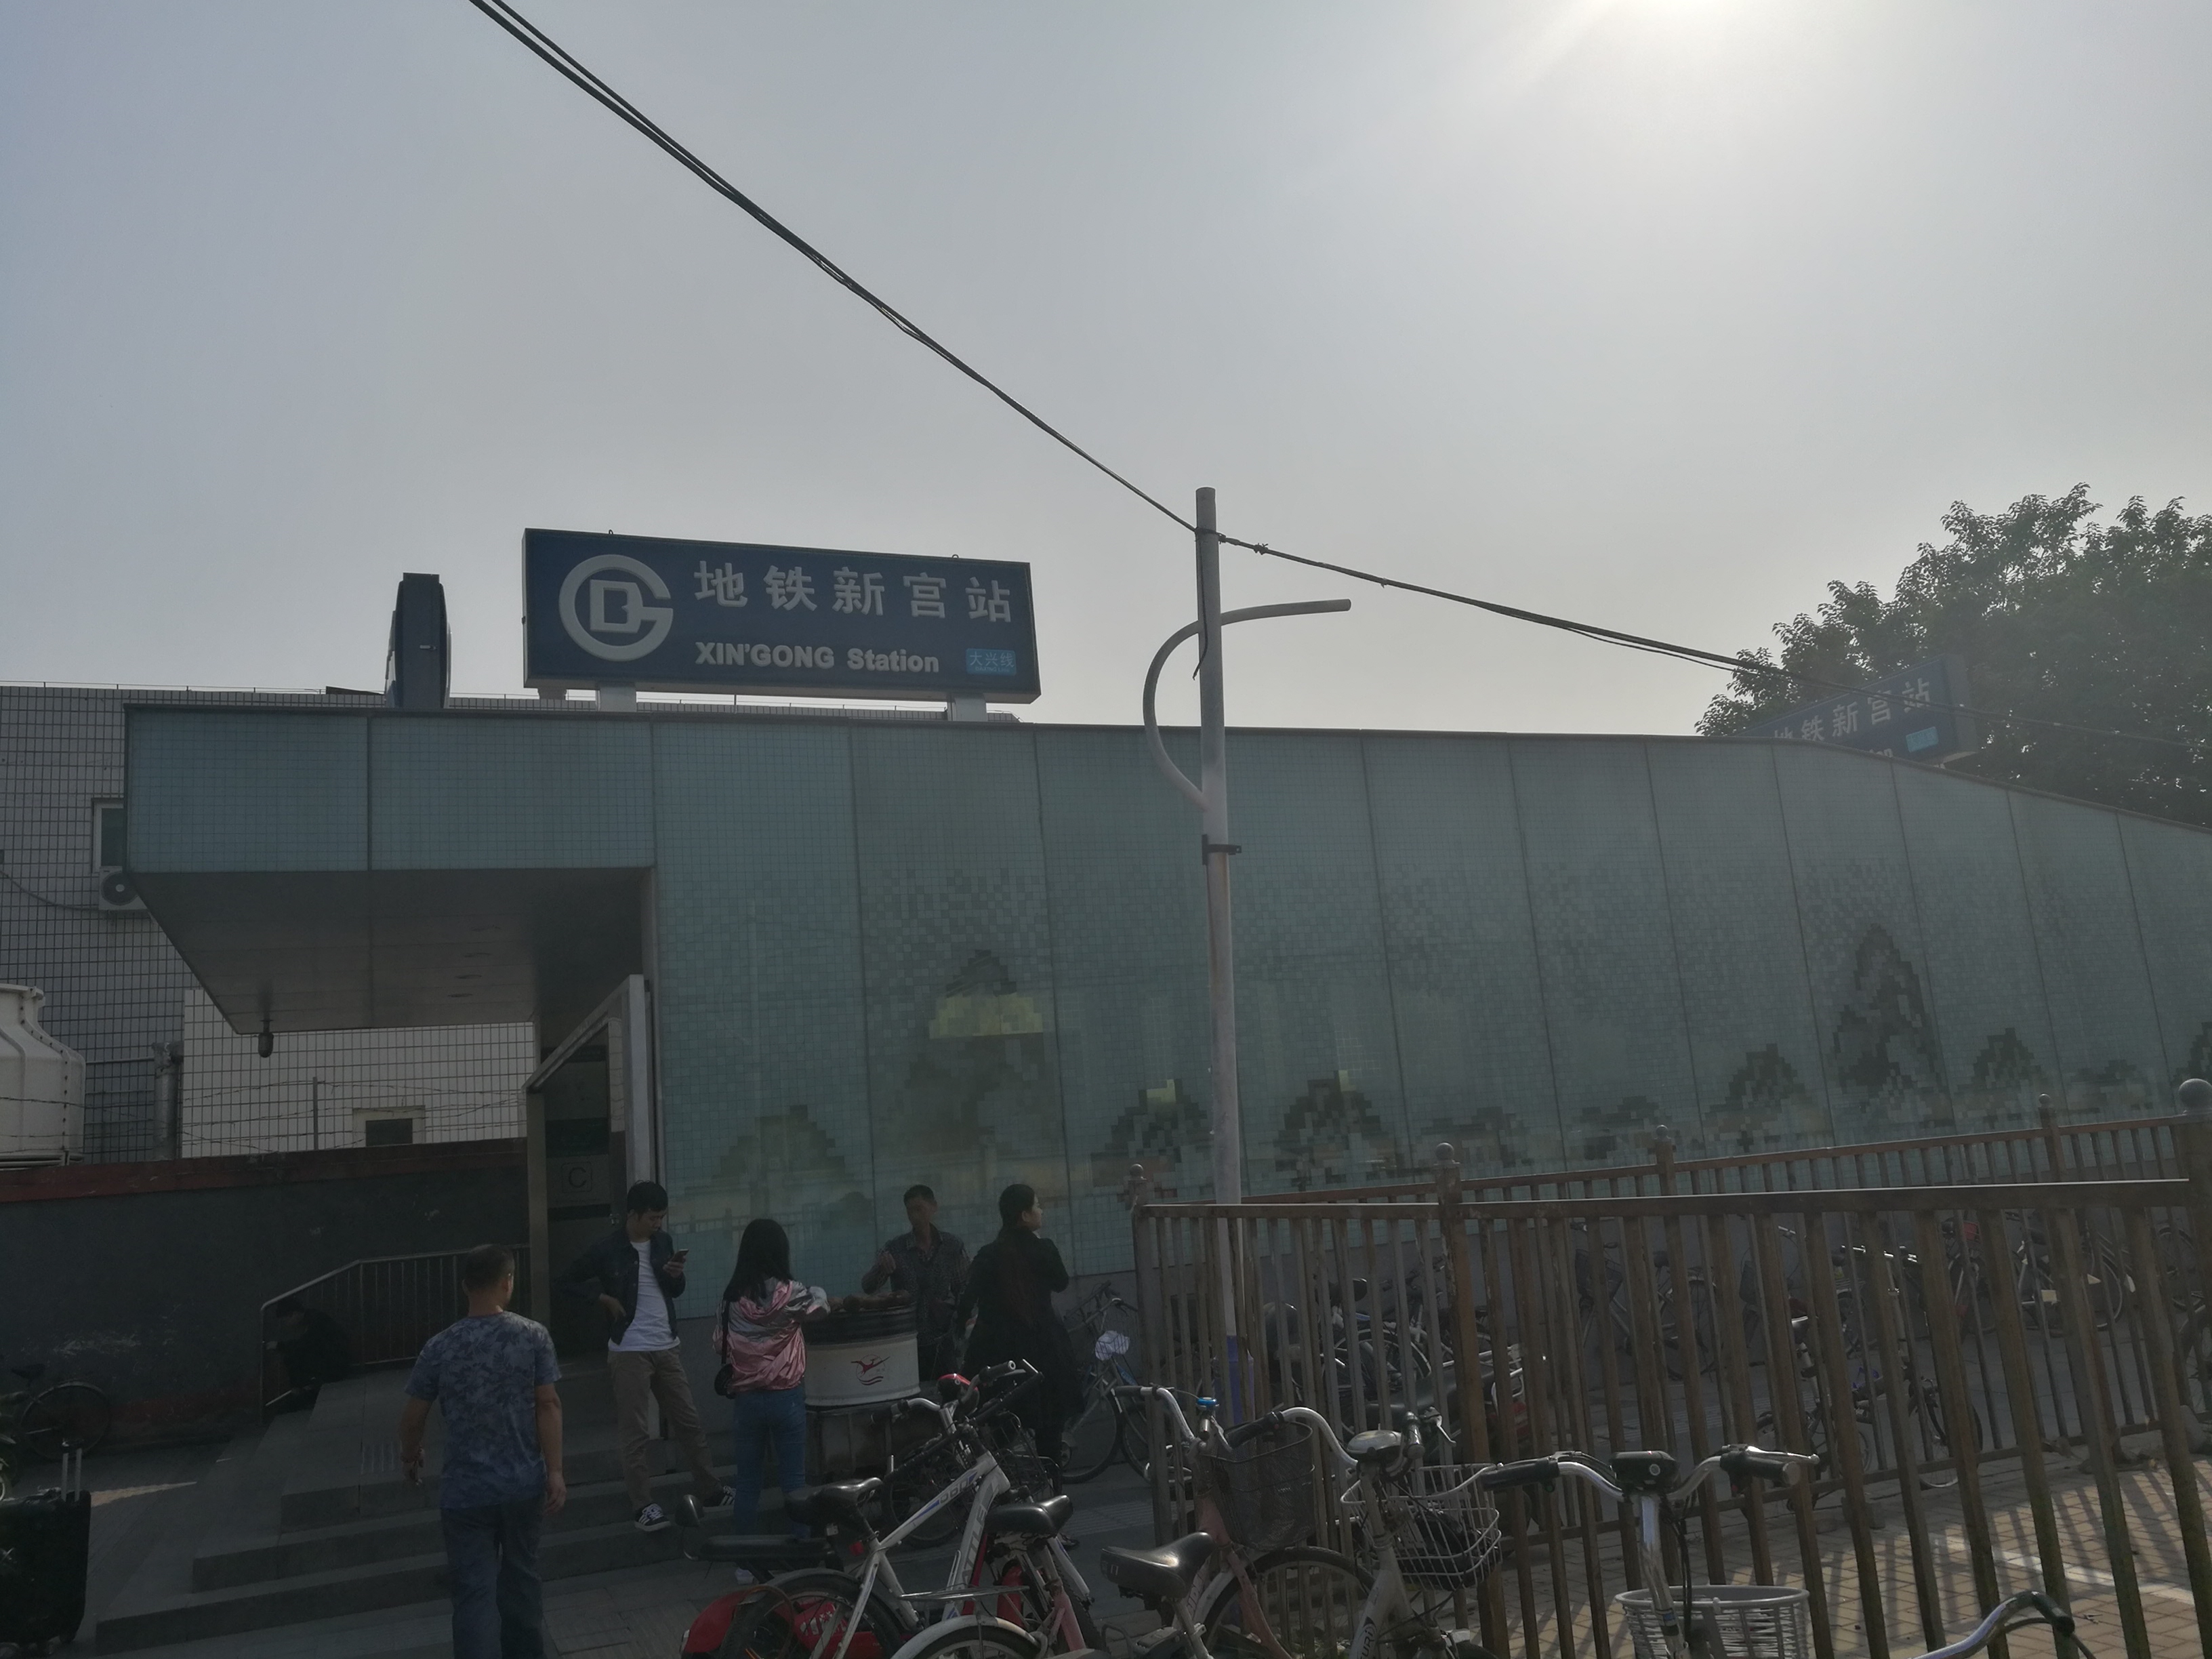 北京地铁19号线的新宫站正在建设:未来将成为大型的换乘站